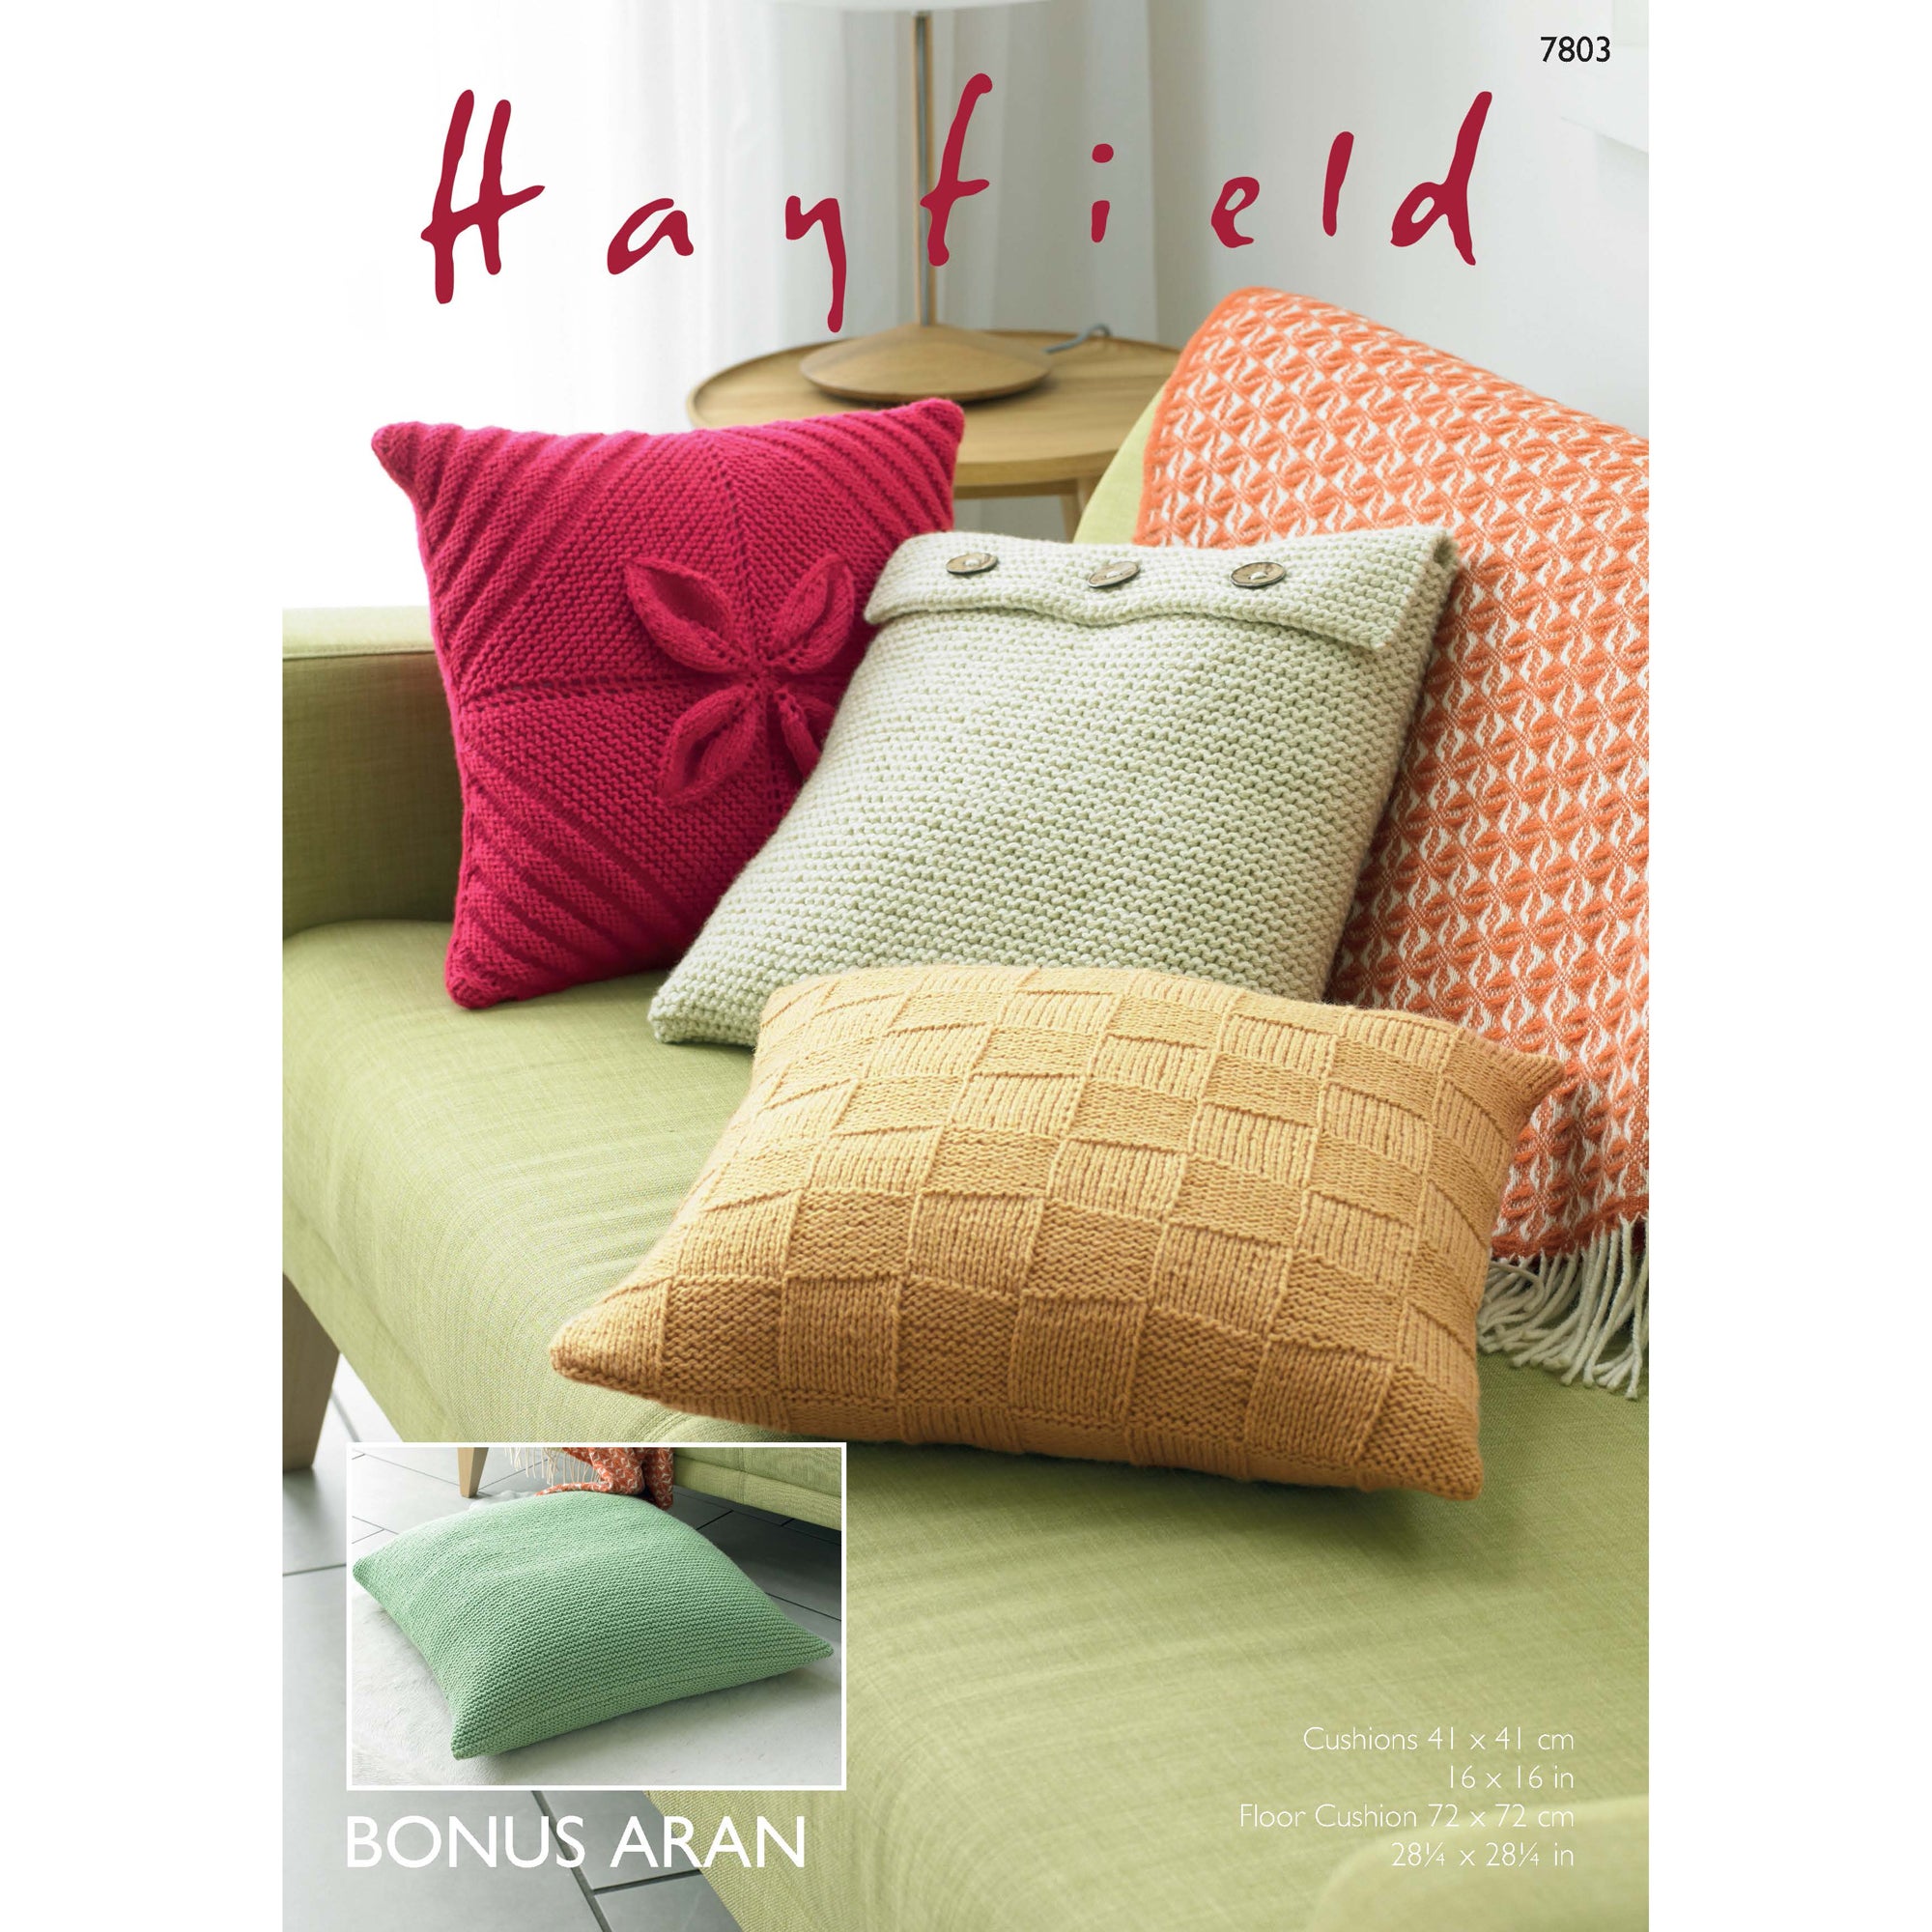 Hayfield 7803 Bonus Aran Cushion Cover Leaflet